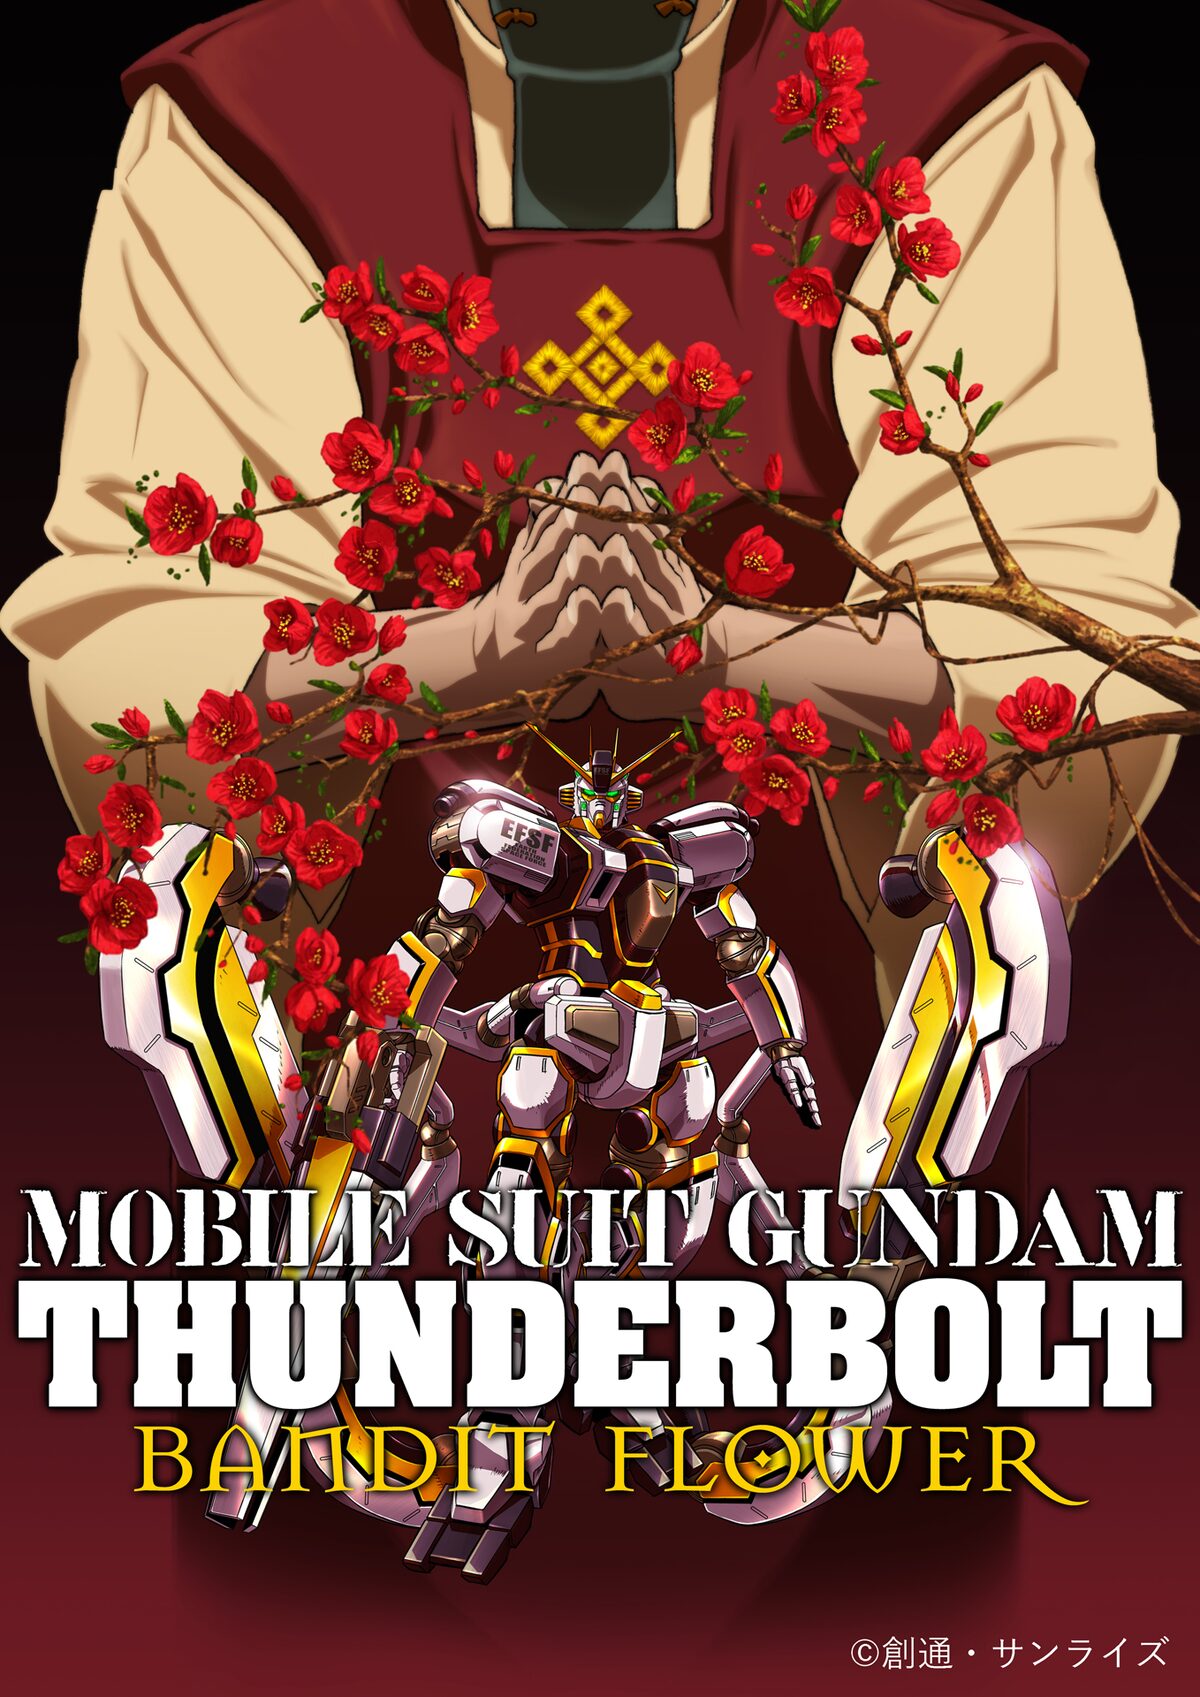 ดูหนังออนไลน์ฟรี Mobile Suit Gundam Thunderbolt Bandit Flower (2016) โมบิลสูท กันดั้มธันเดอร์โบลท์